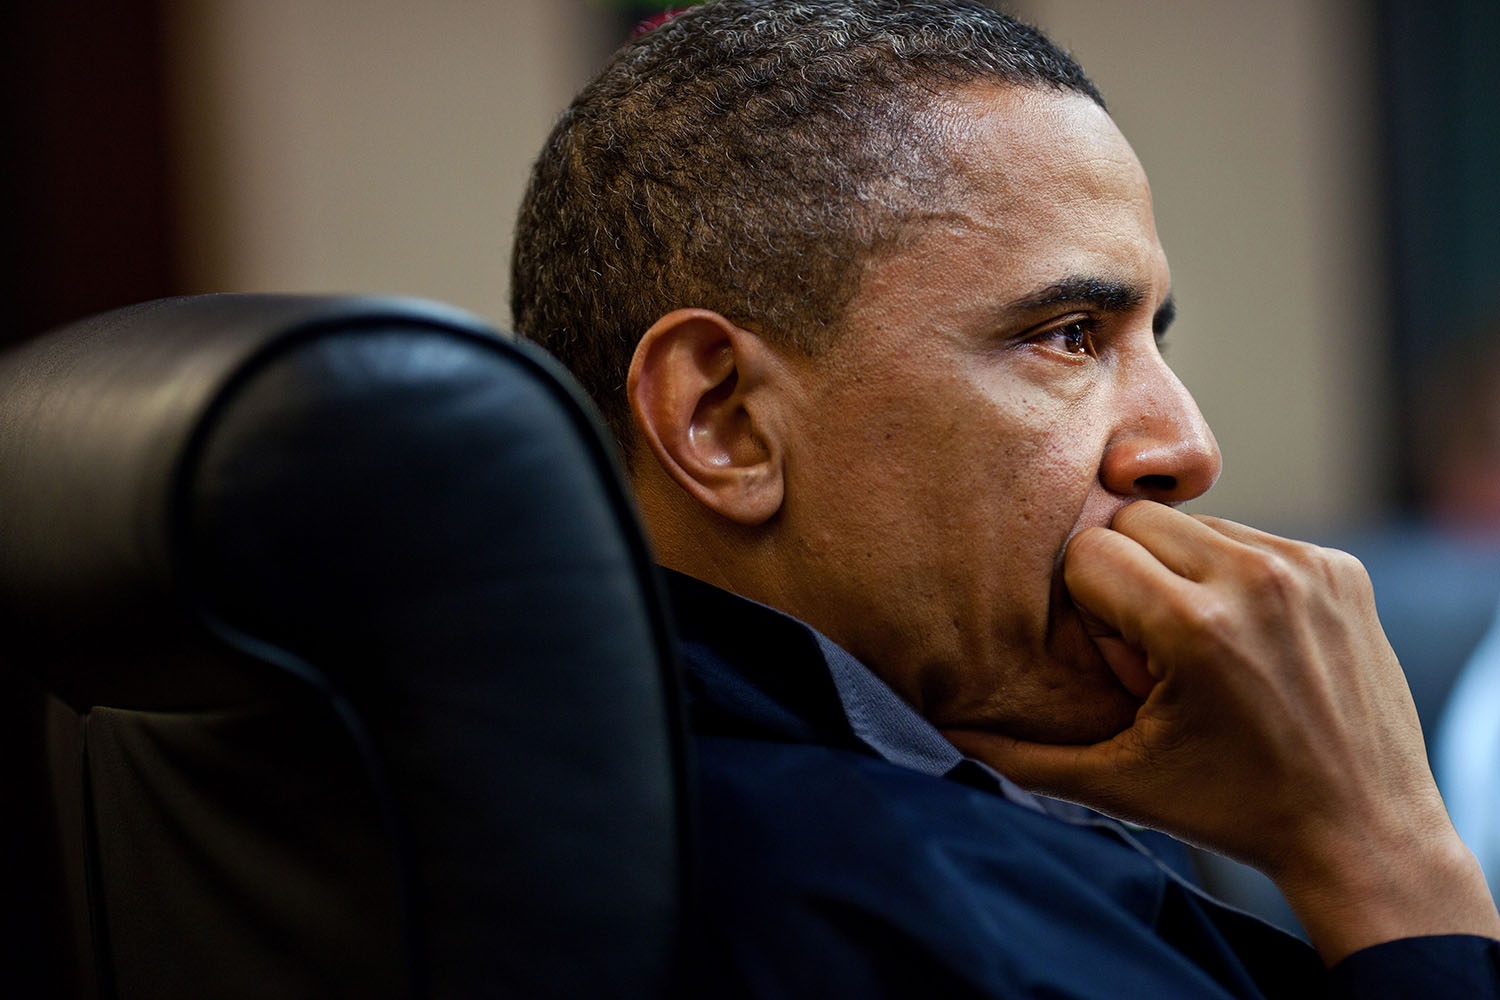 Pete Souza/Obama White House/Flickr